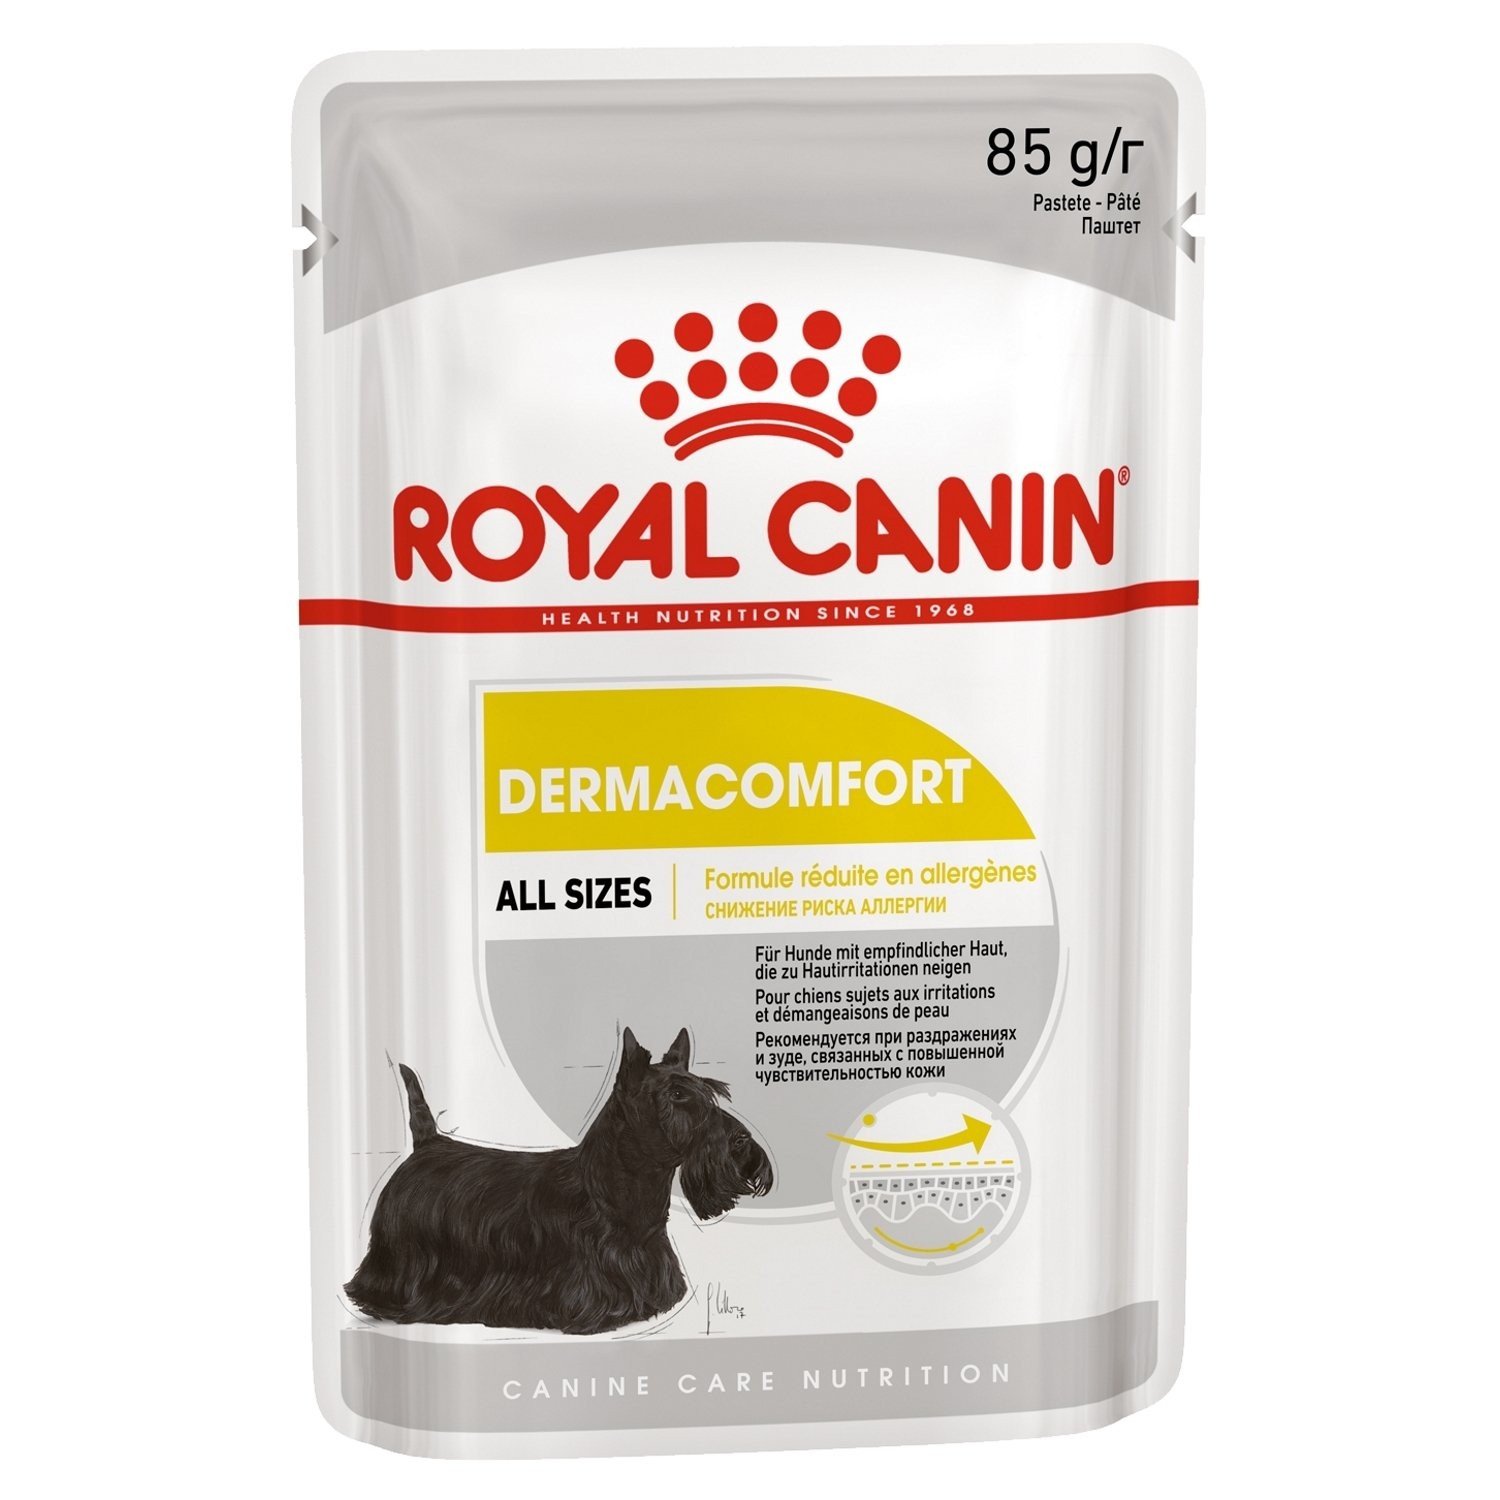 Royal Canin Sachet fraîcheur Dermacomfort mousse pour Chien Sensible